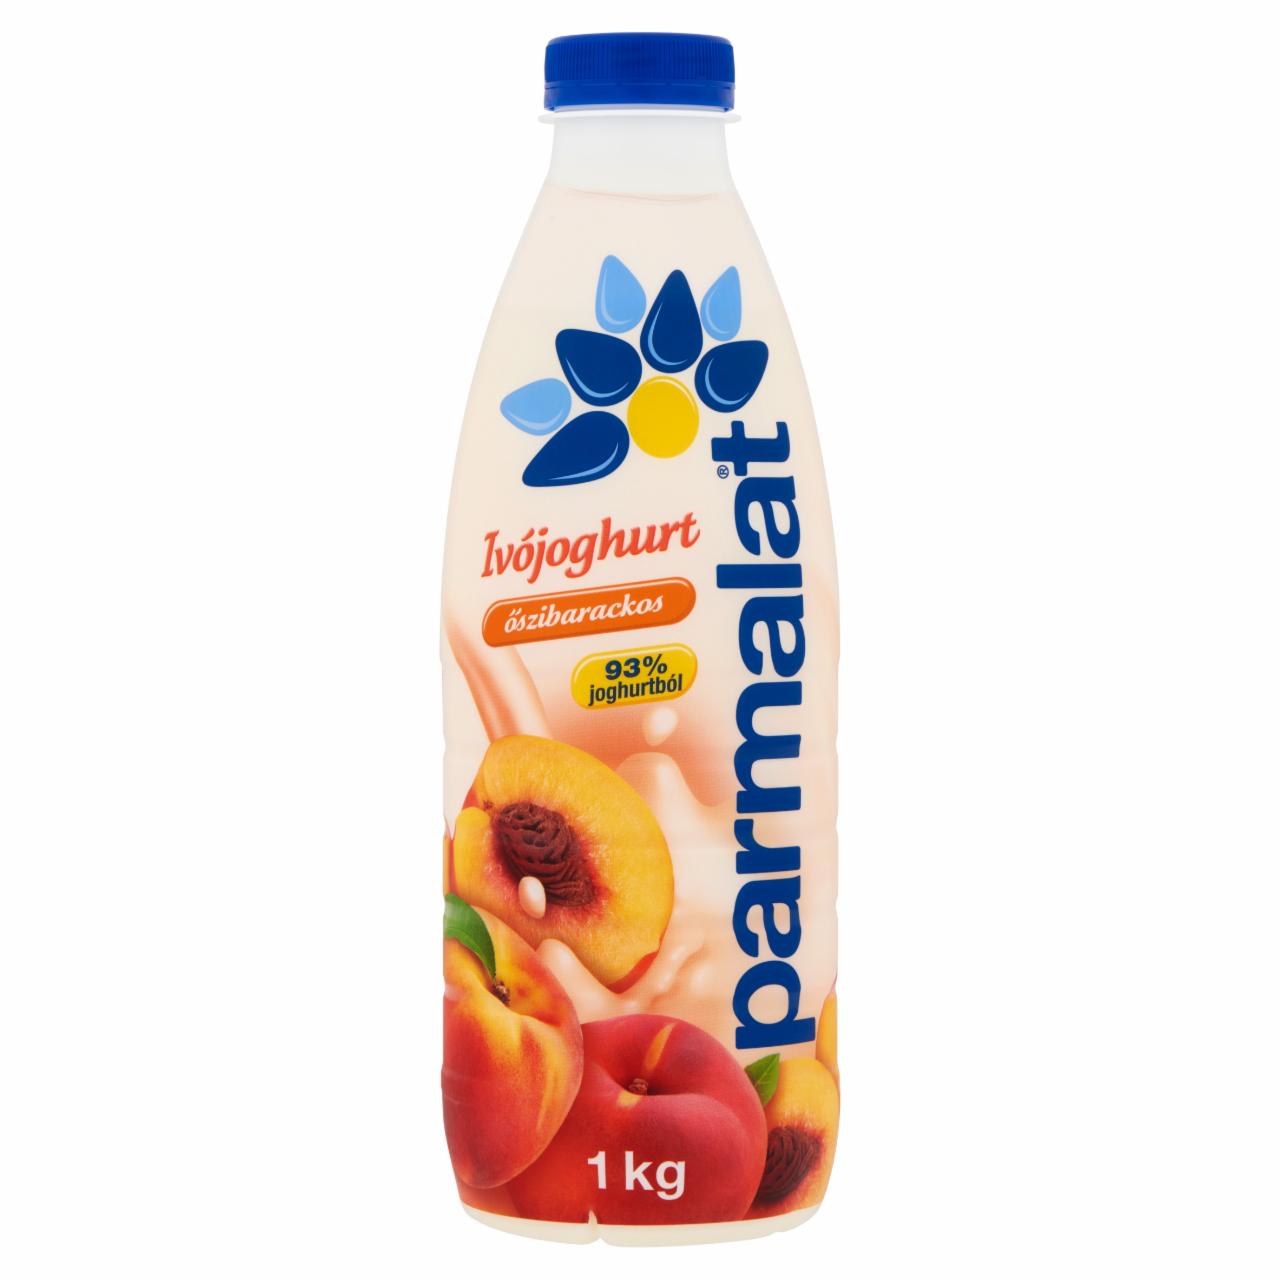 Képek - Parmalat zsírszegény őszibarackos ivójoghurt 1 kg